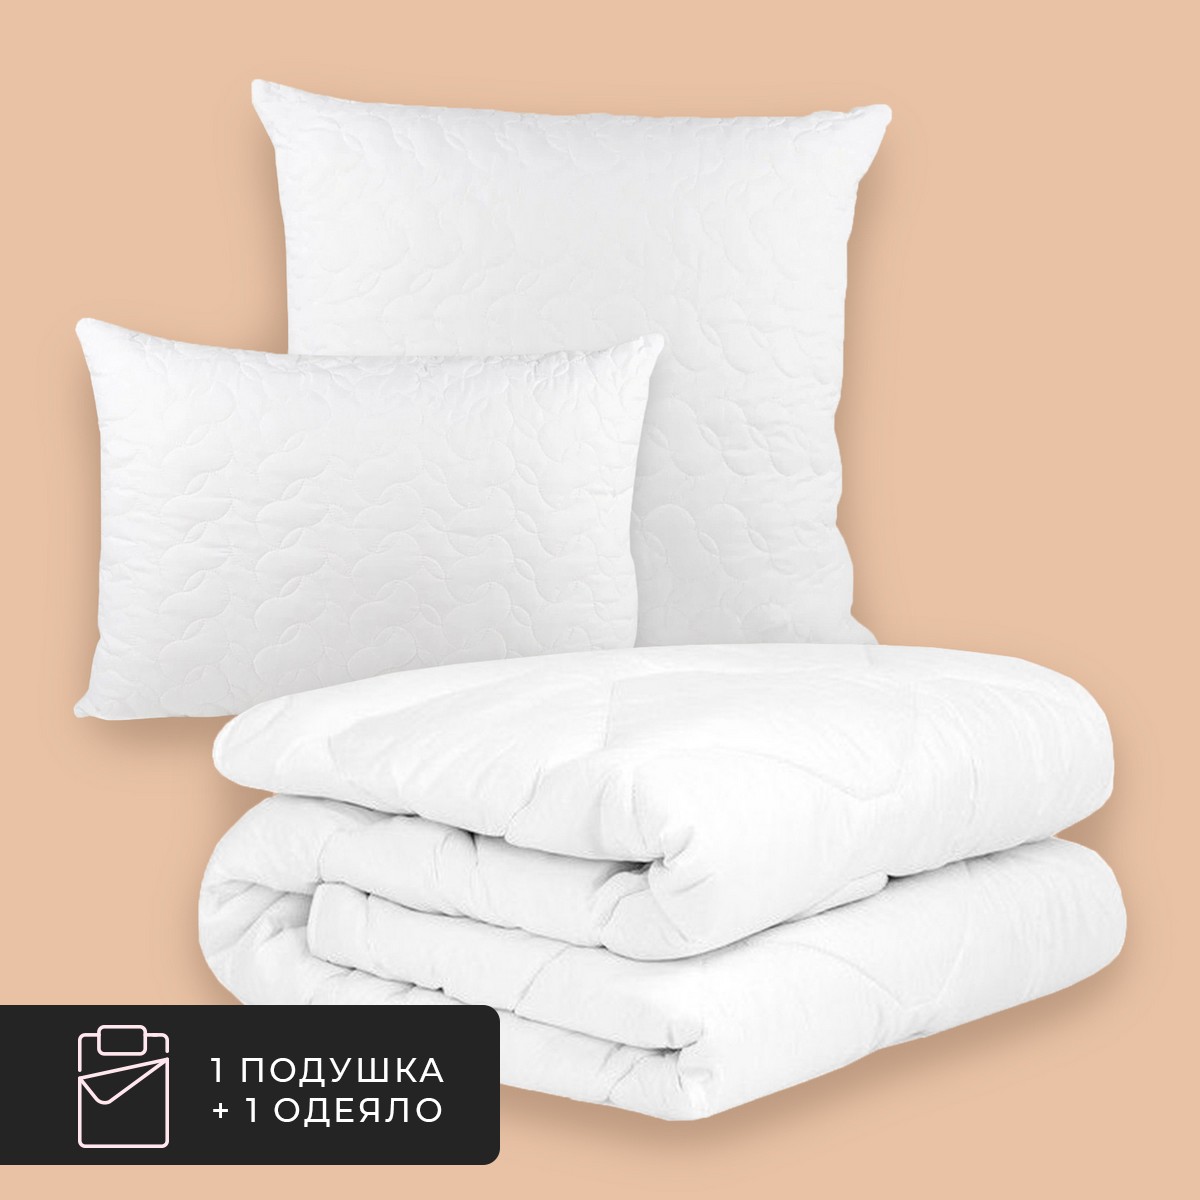 Набор 1 одеяло + 1 подушка Алоэ Вера, бамбуковое волокно в микрофибре (200х210, 50х70)